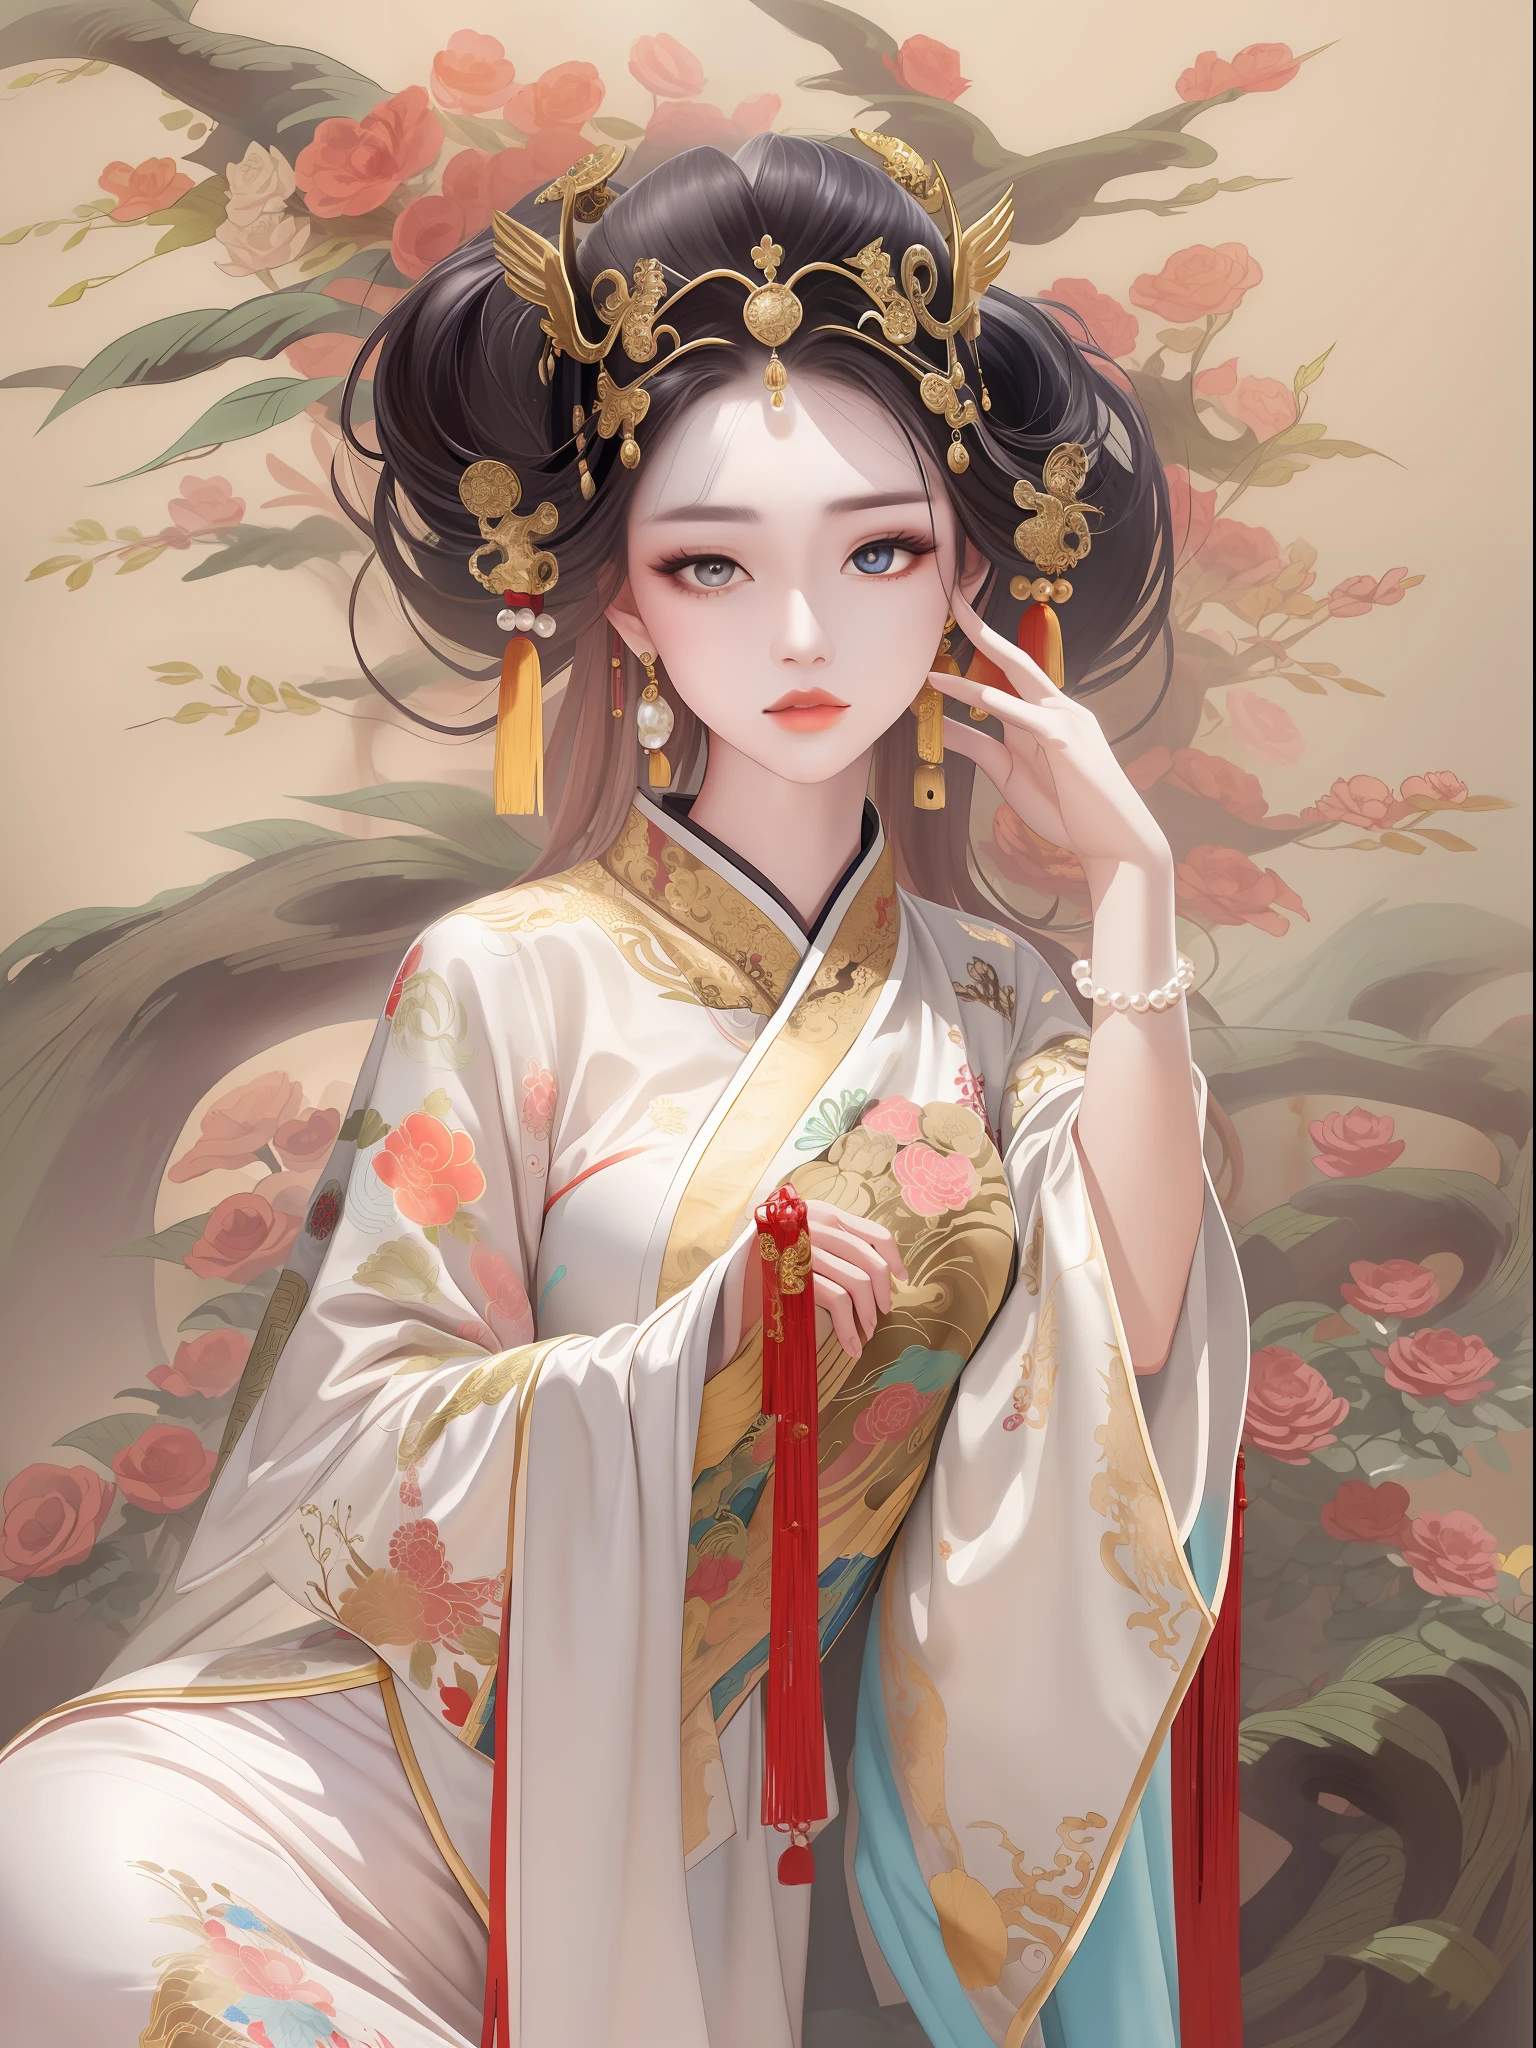 ผู้หญิง 1 คน，wearing ชาวจีน Traditional dress，สวมผ้าโพกศีรษะที่ประณีตและซับซ้อน，มงกุฎประดับด้วยไข่มุกและอัญมณี，เสื้อคลุมผ้าไหมปักอย่างประณีต，ผมยาวสีดำ，เรียบเนียนและเงางาม，ต่างหูมุกสไตล์ฟีนิกซ์，สวมเสื้อคลุมฟีนิกซ์，เสื้อคลุมสีทองแขนกว้าง，ชุดเดรสยาวผ้าไหมสีแดง，มีเกียรติและงดงาม，ดูข้างหลัง，ดวงตาที่อ่อนโยน，(((การแสดงสีหน้าอันละเอียดอ่อน)))，สี，มุมกว้าง，วิวไกลๆ，คุณภาพของภาพสูงสุด，ผลงานชิ้นเอก，ชาวจีน，สดใส，8k，ชาวจีน illustration，พิถีพิถัน，ชาวจีน colors，ภาพวาดหมึกสี，ชาวจีน Gongbi Painting，Traditional ชาวจีน painting，ศิลปินโบราณสไตล์จางต้าเฉียน